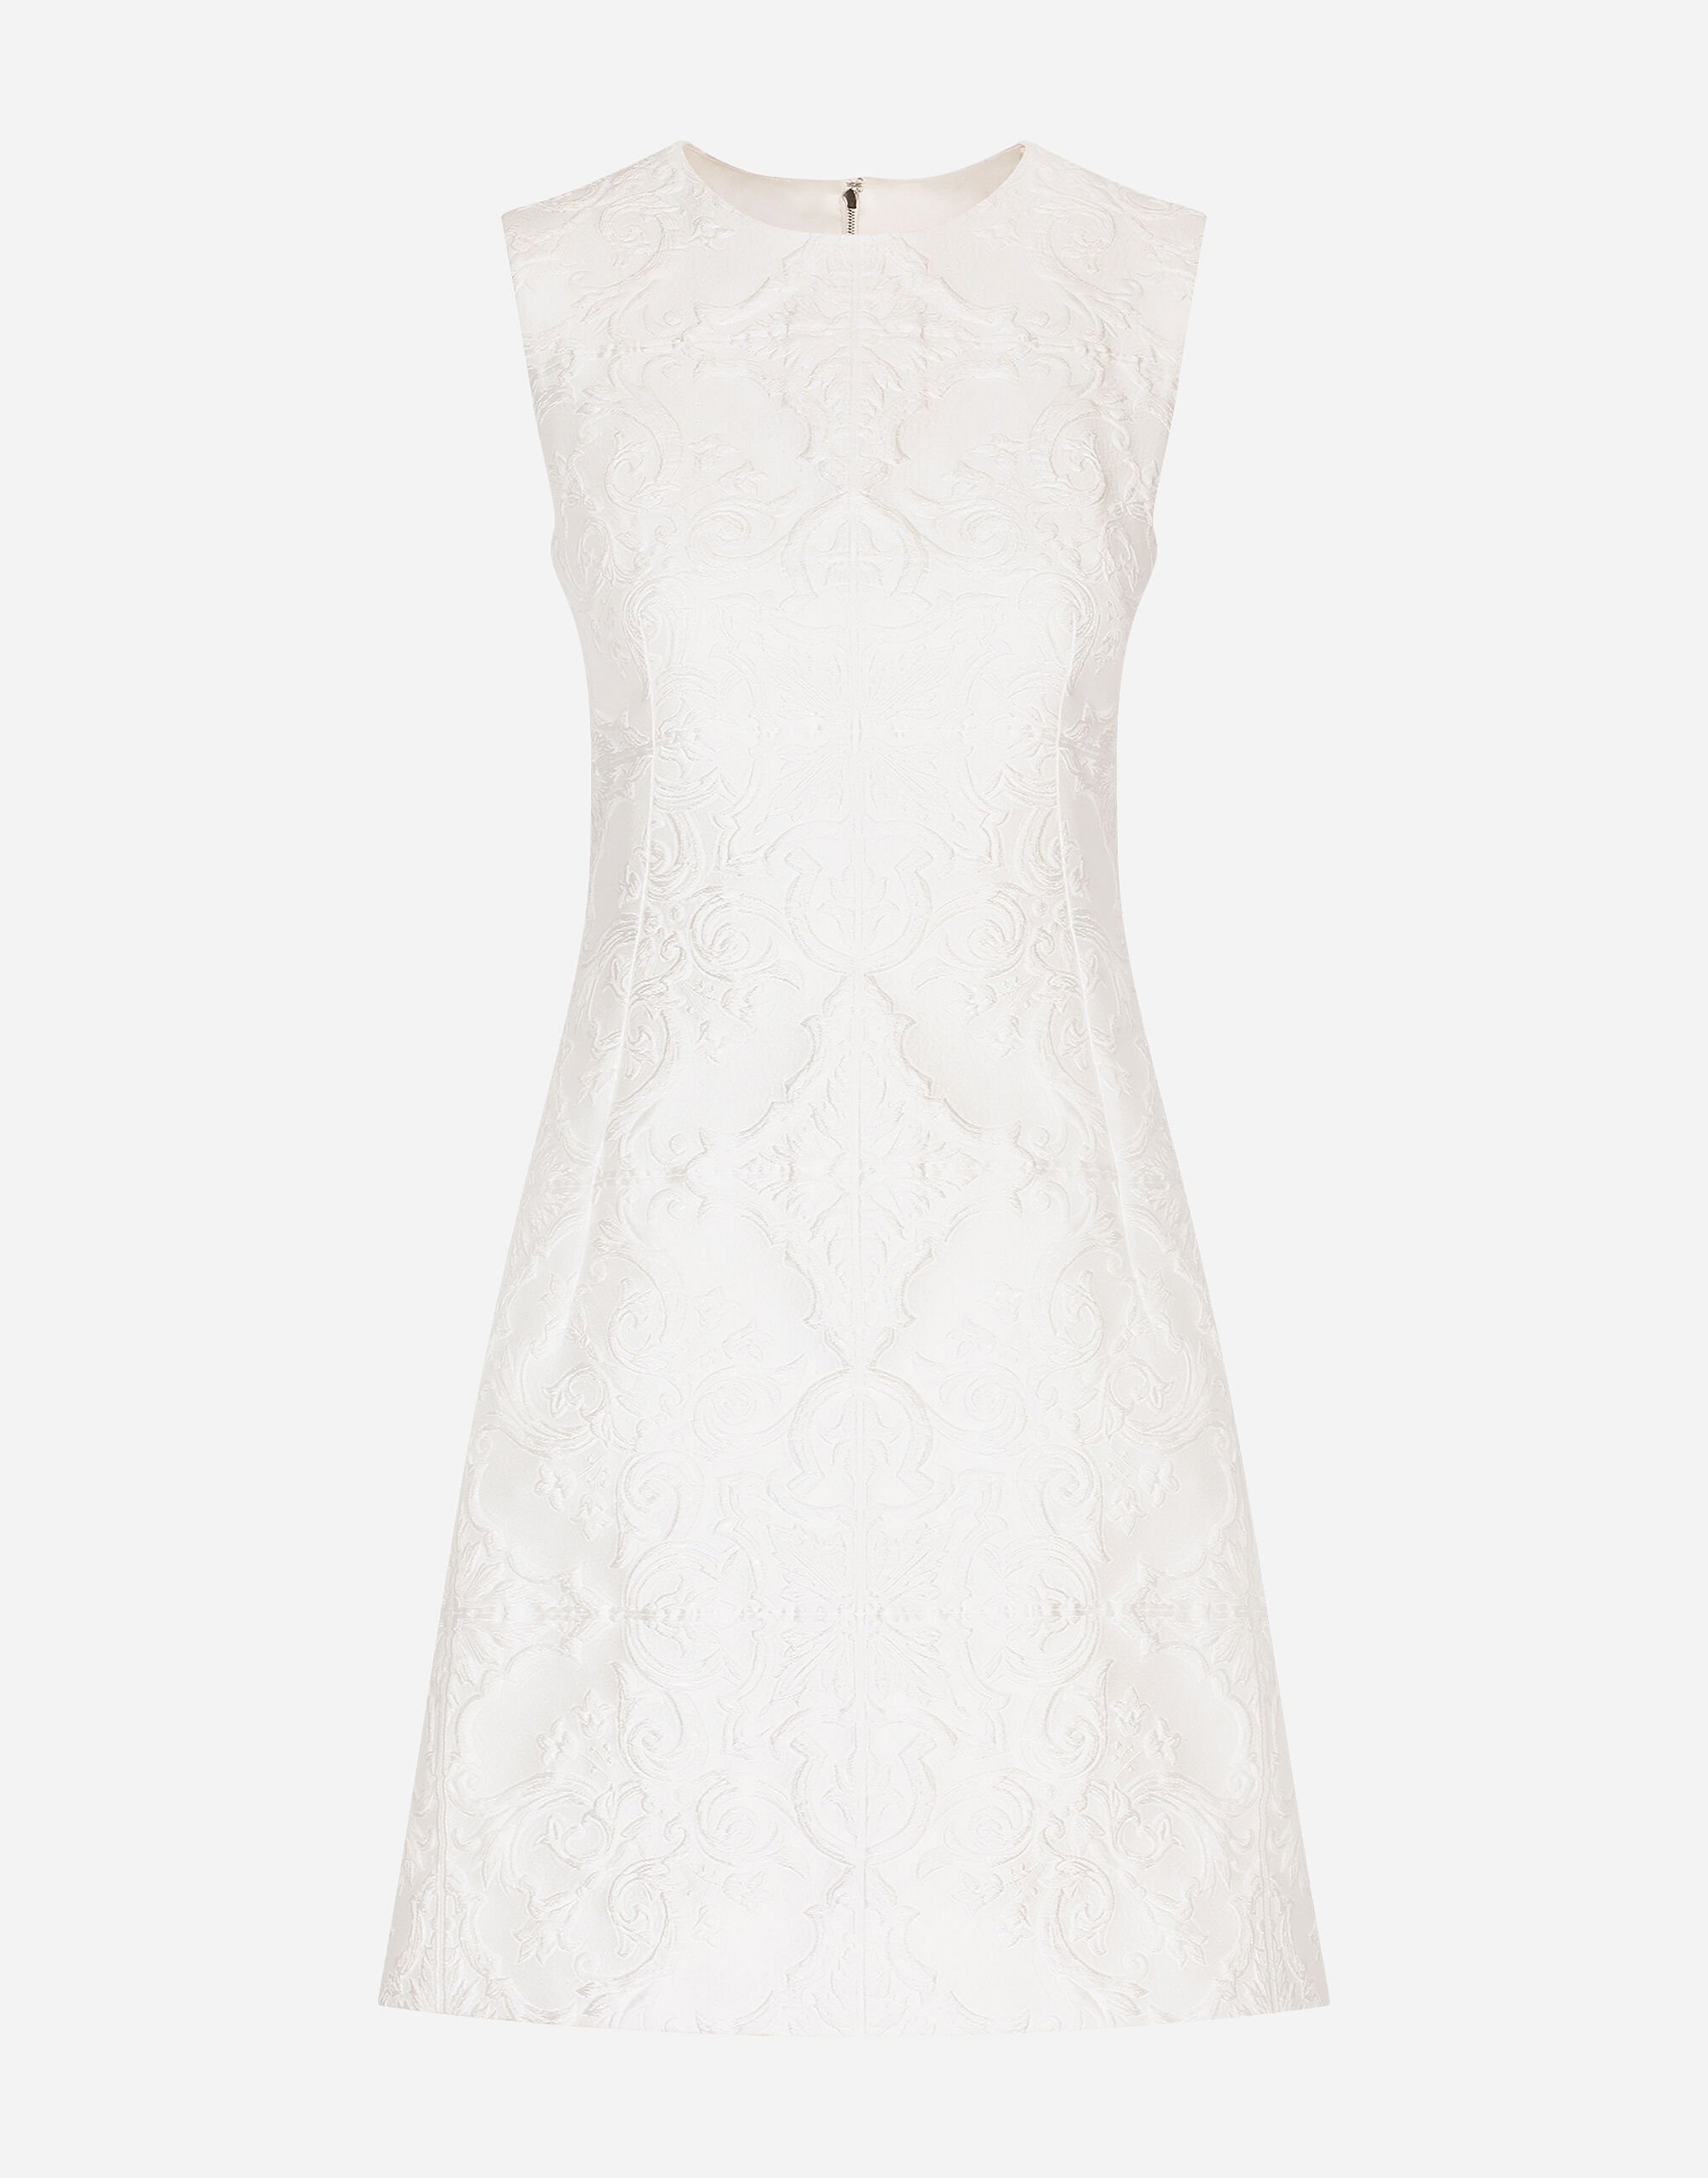 Dolce & Gabbana Short brocade dress Print F6AHOTHS5NK